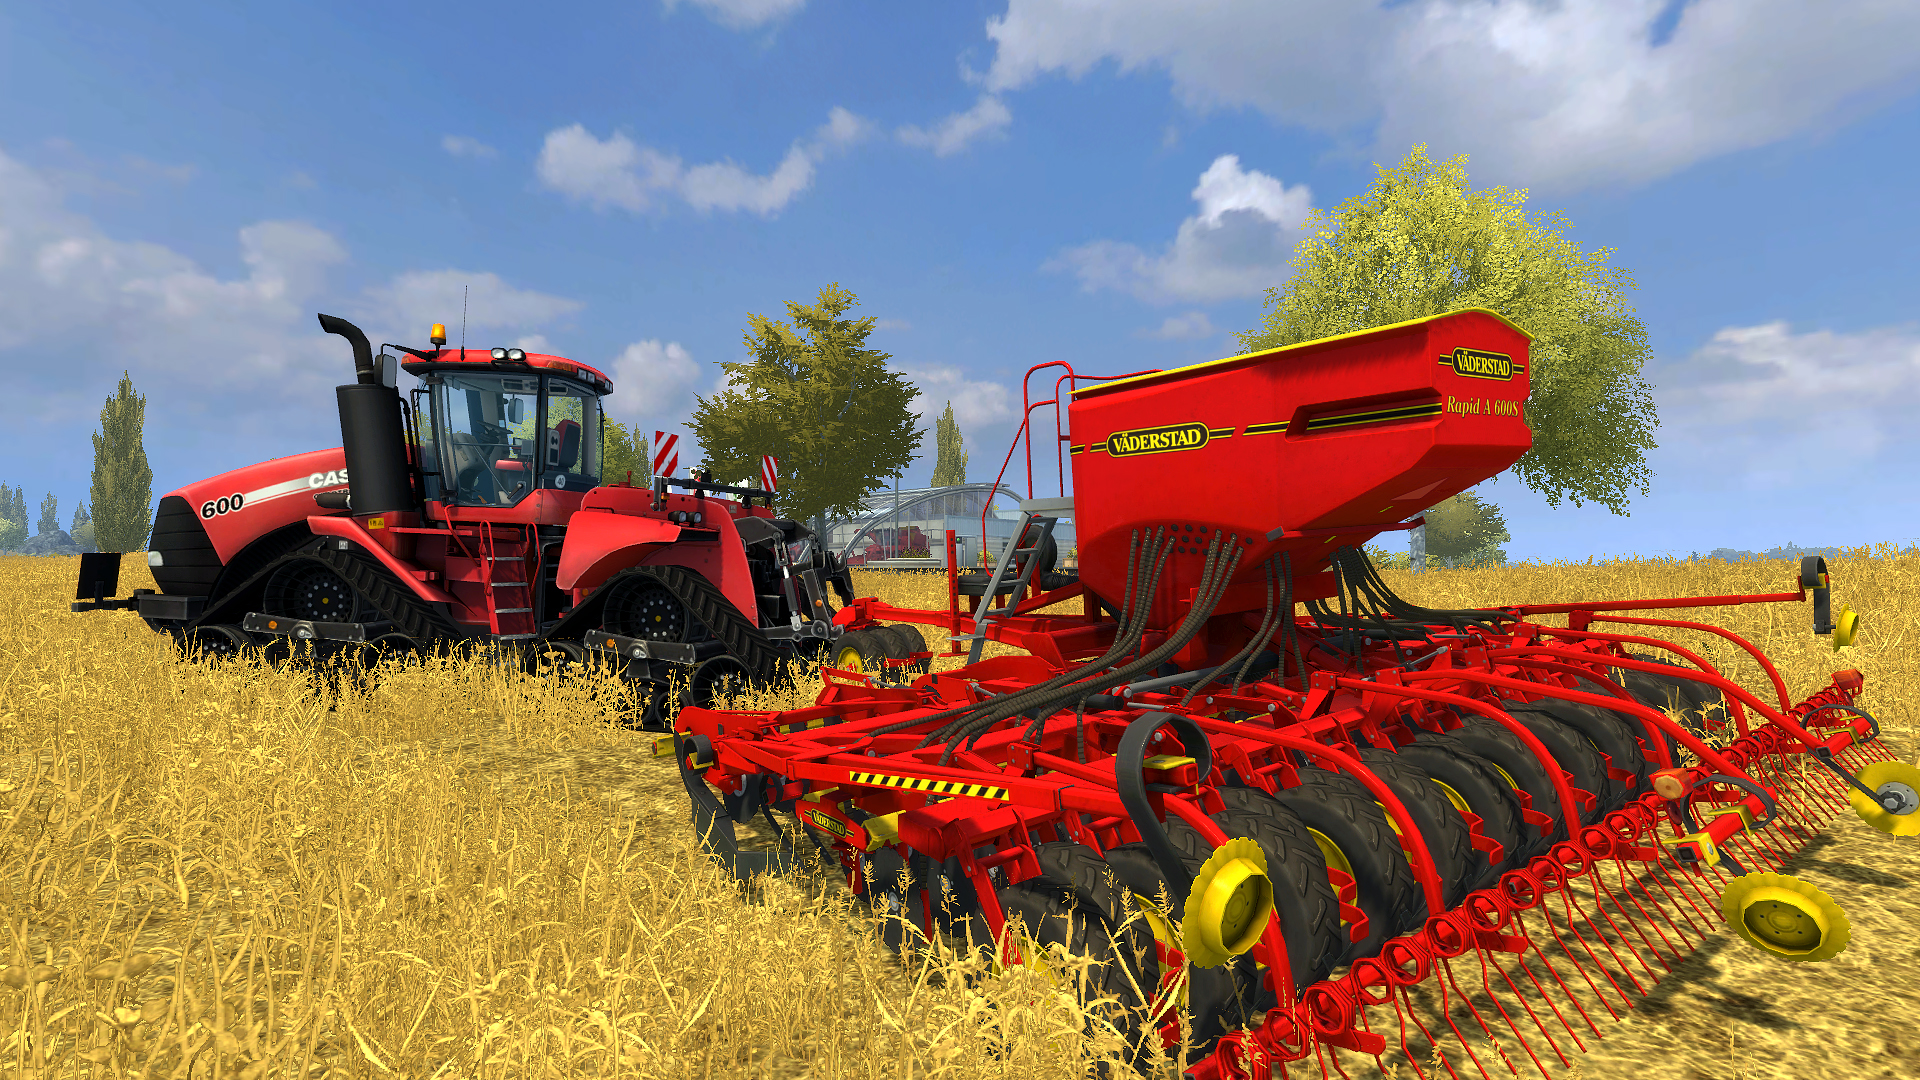 Farming Simulator 2013 - Väderstad DLC Steam CD Key 3.38 usd